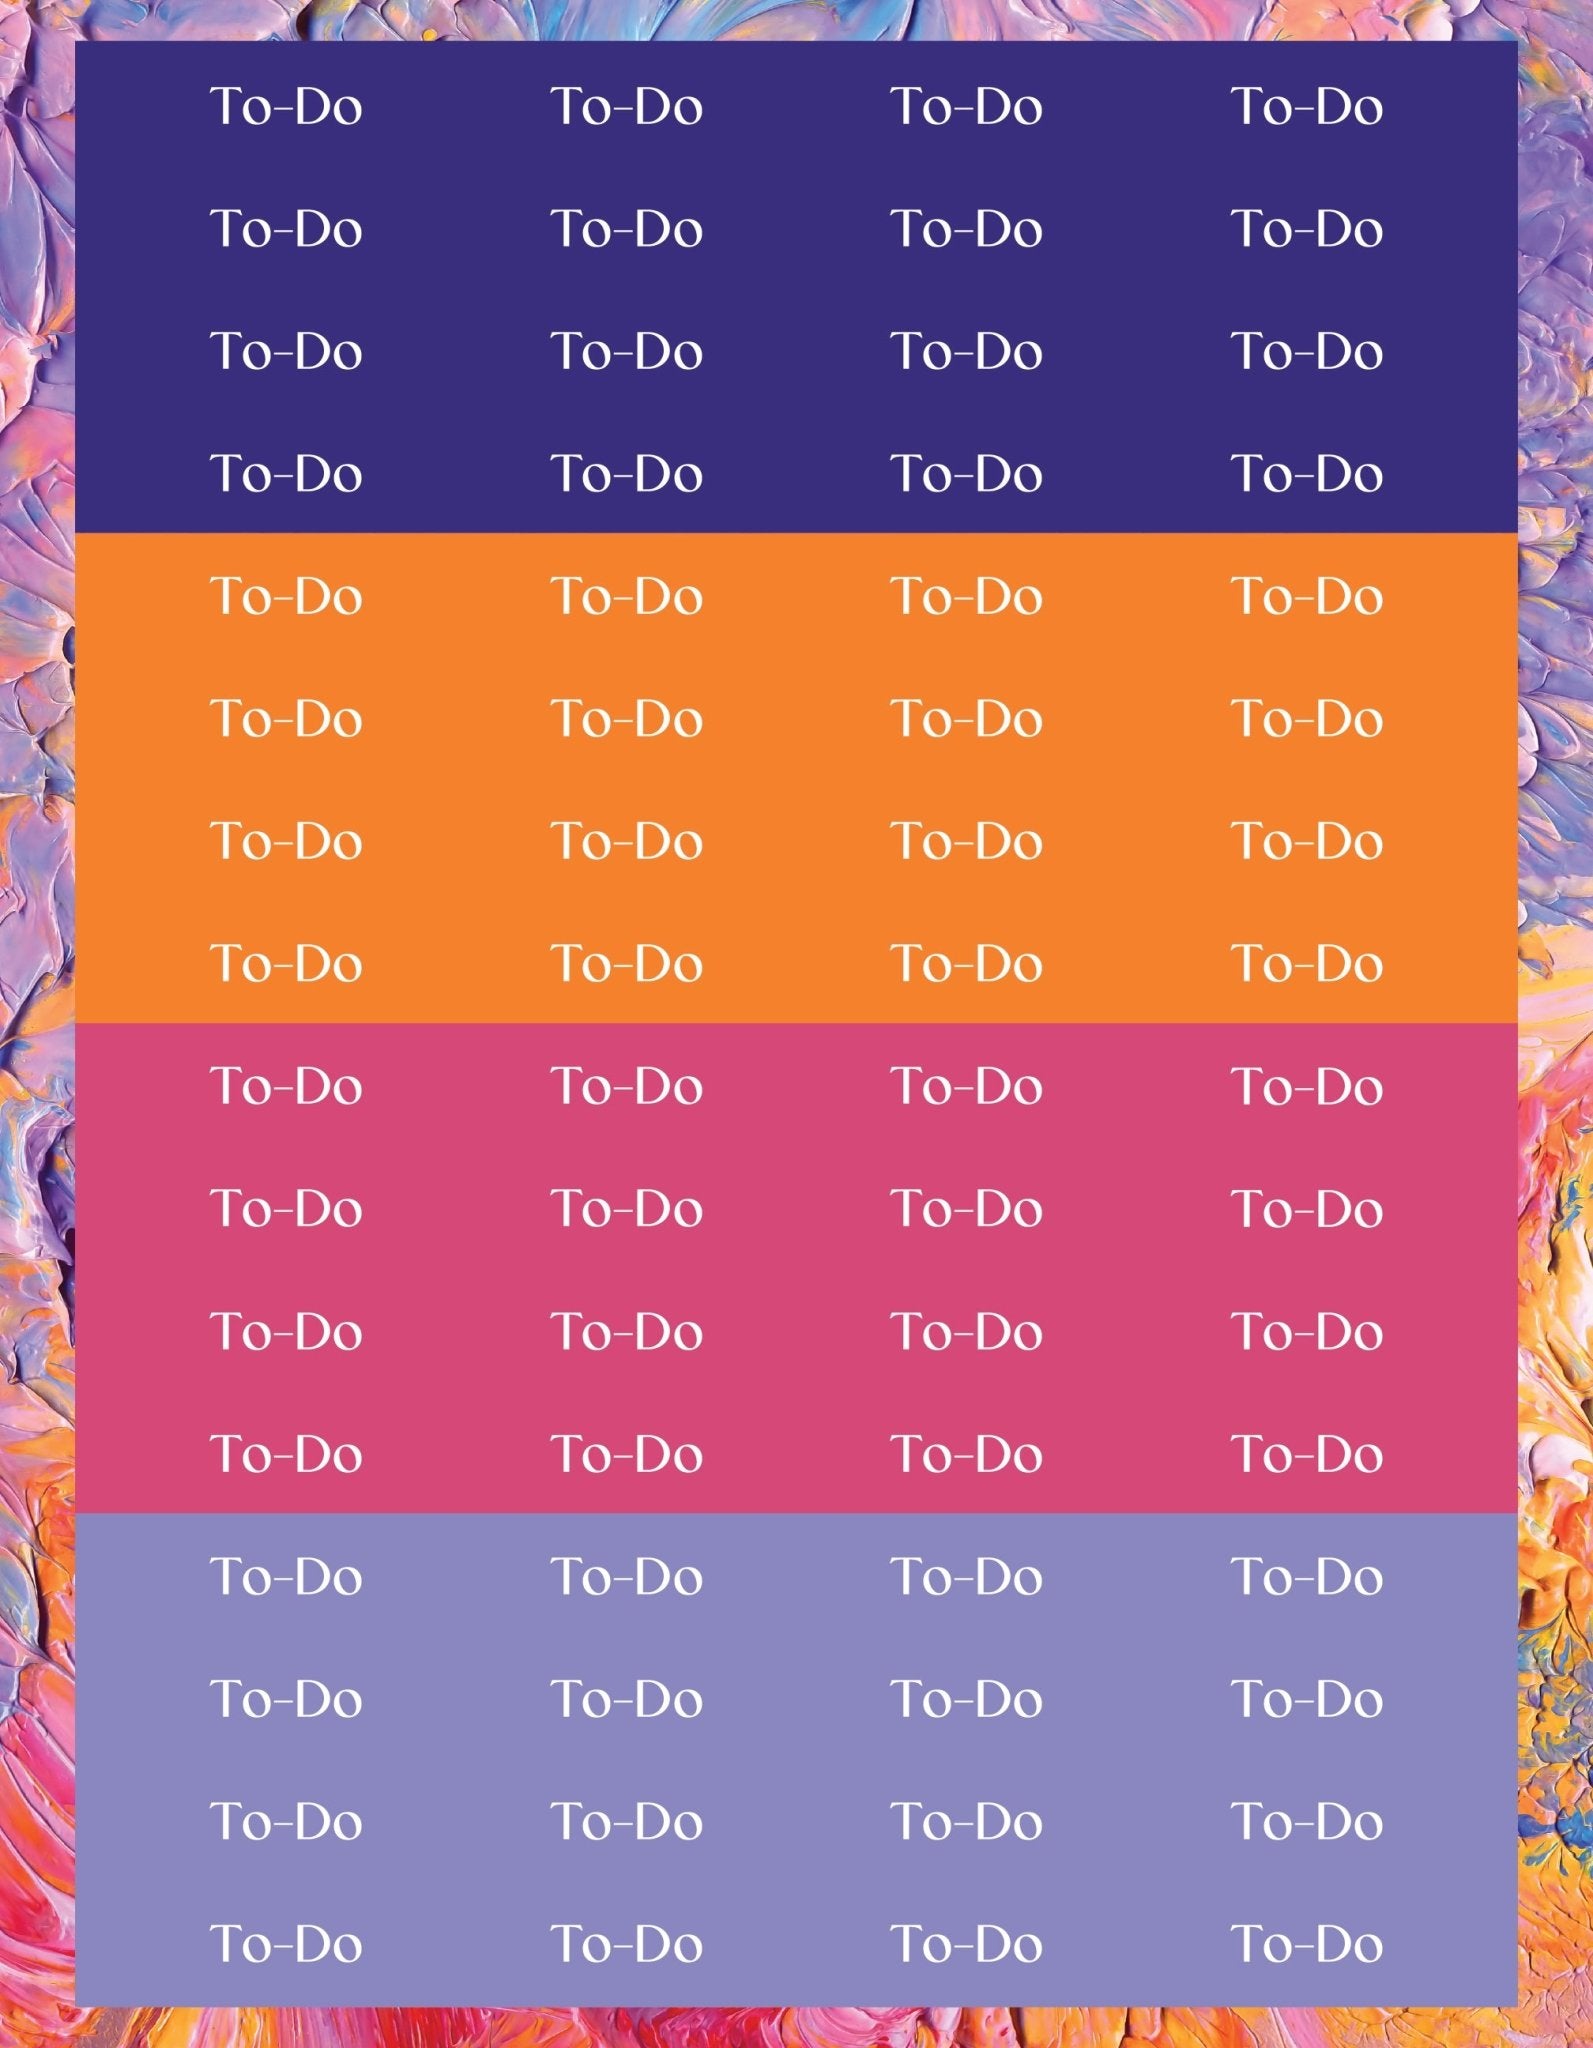 To-Do Sticker Sheets - 9 Designs/Colors - Colibri Paper Co